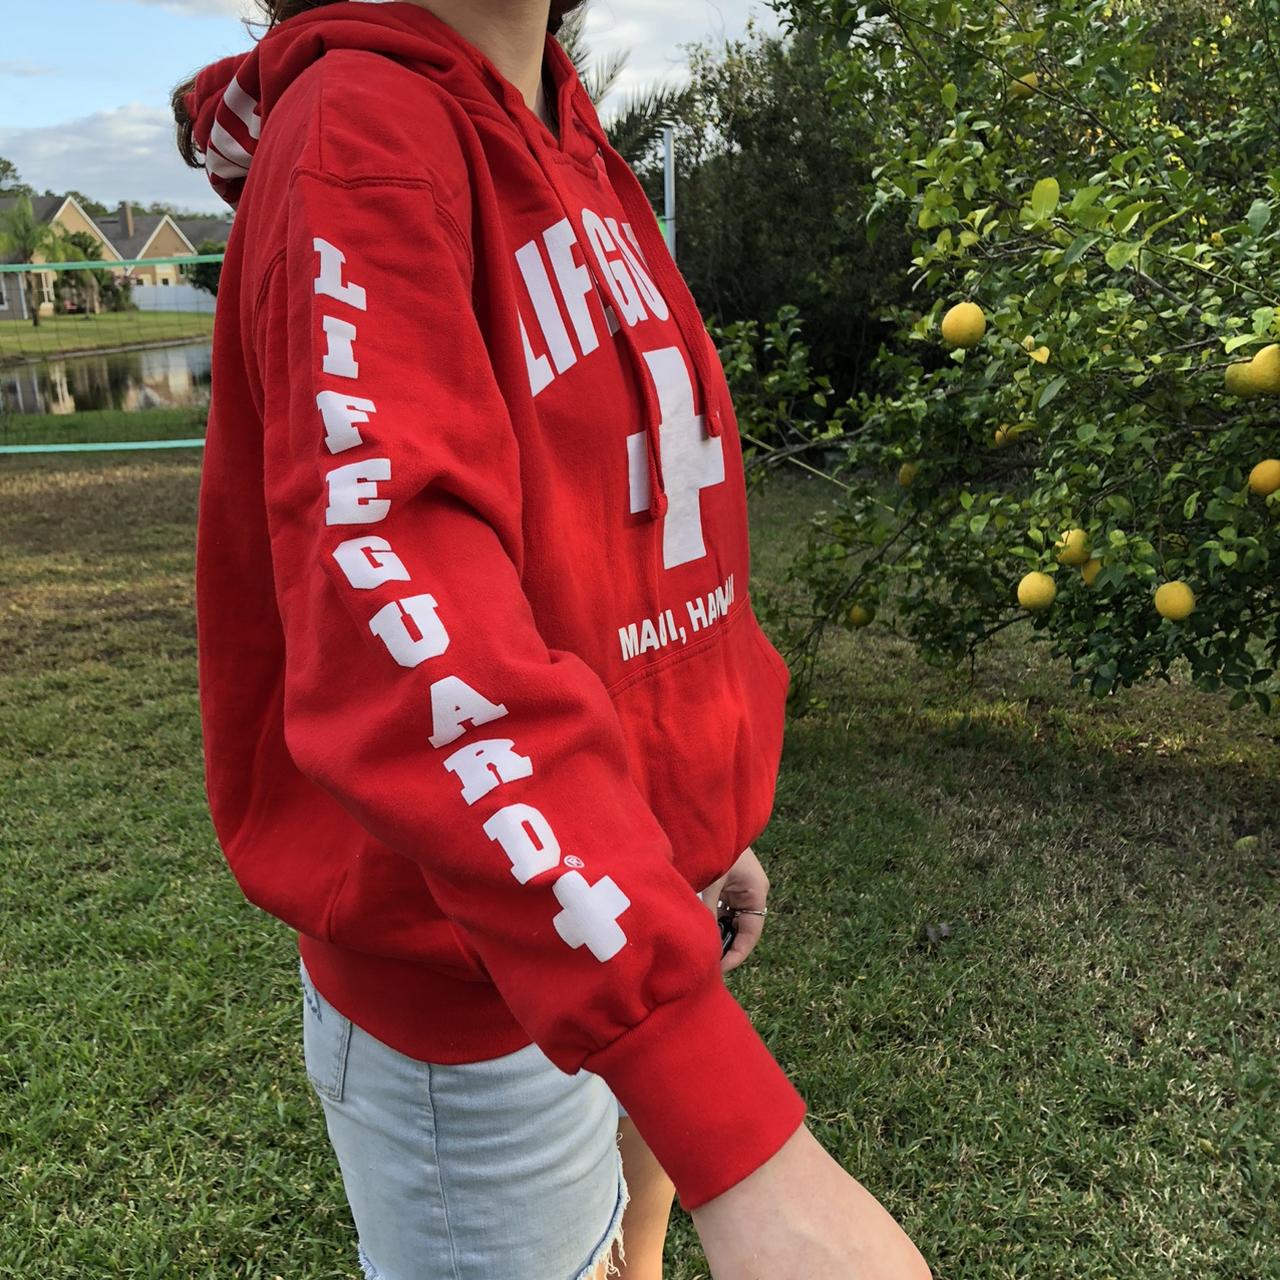 official maui hawaii lifeguard hoodie women's size - Depop